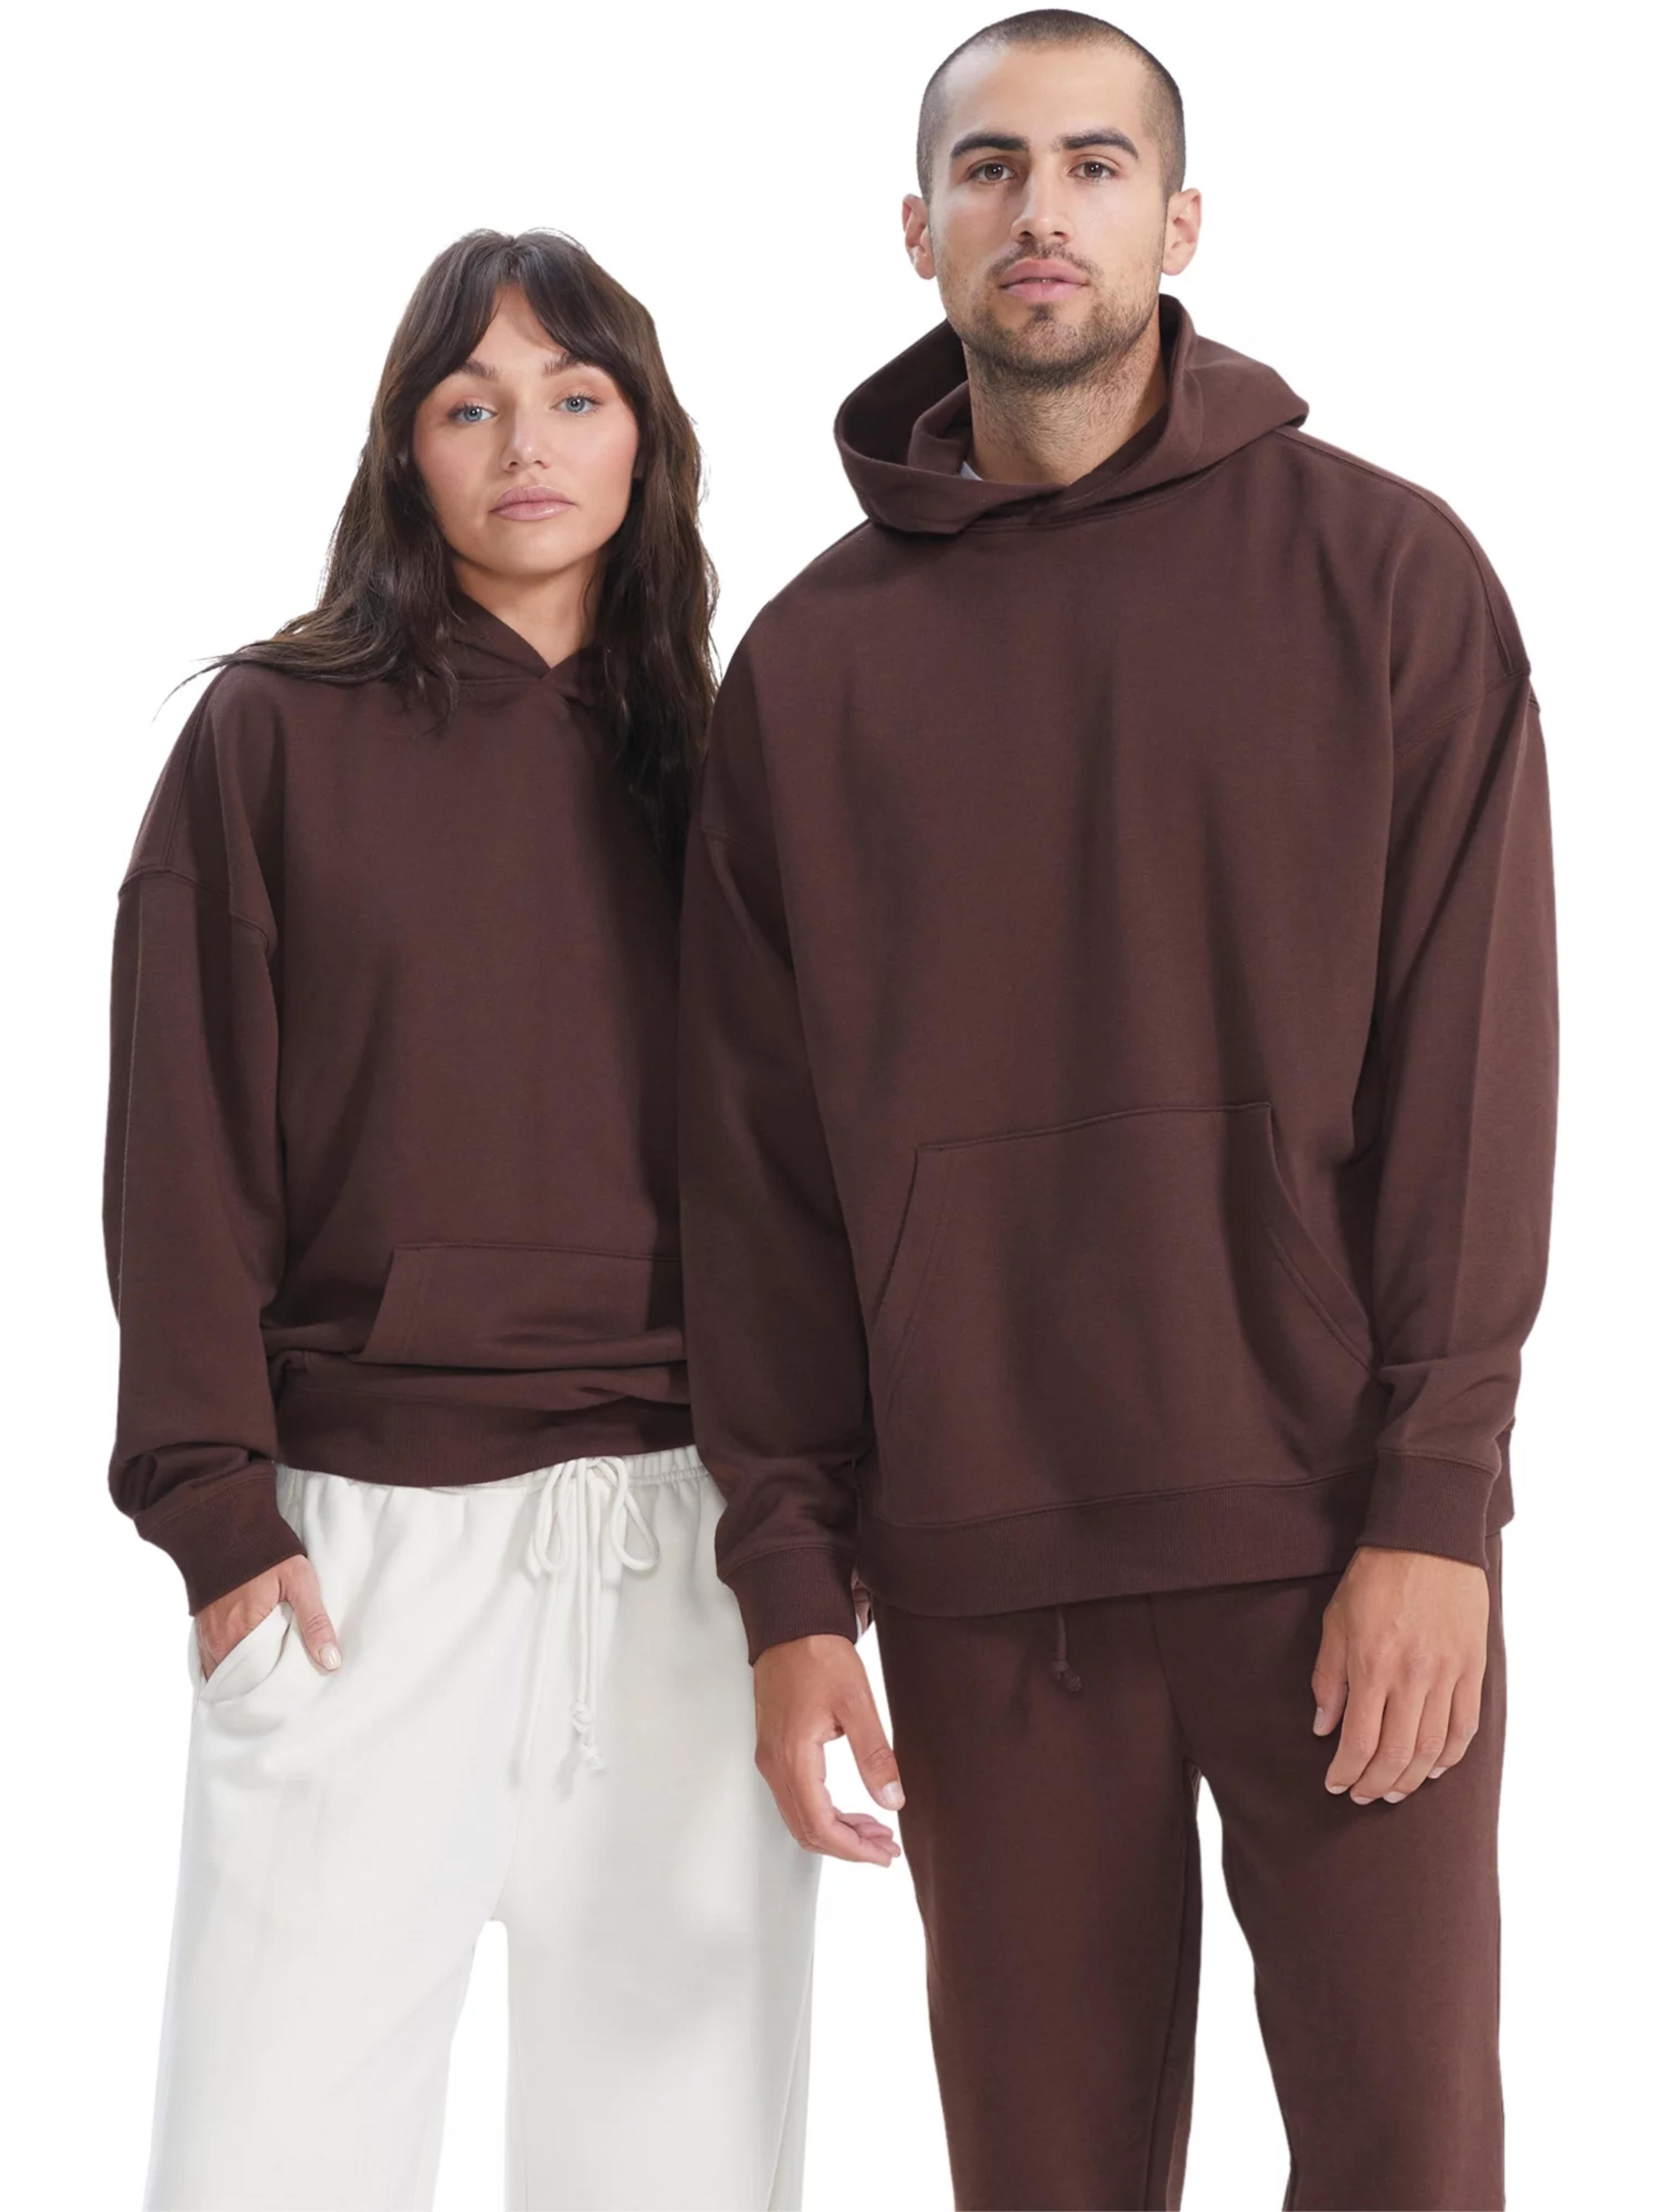 No Boundaries All Gender Oversize Hoodie Sweatshirt, Men's Sizes XS - 3XL - Walmart.com